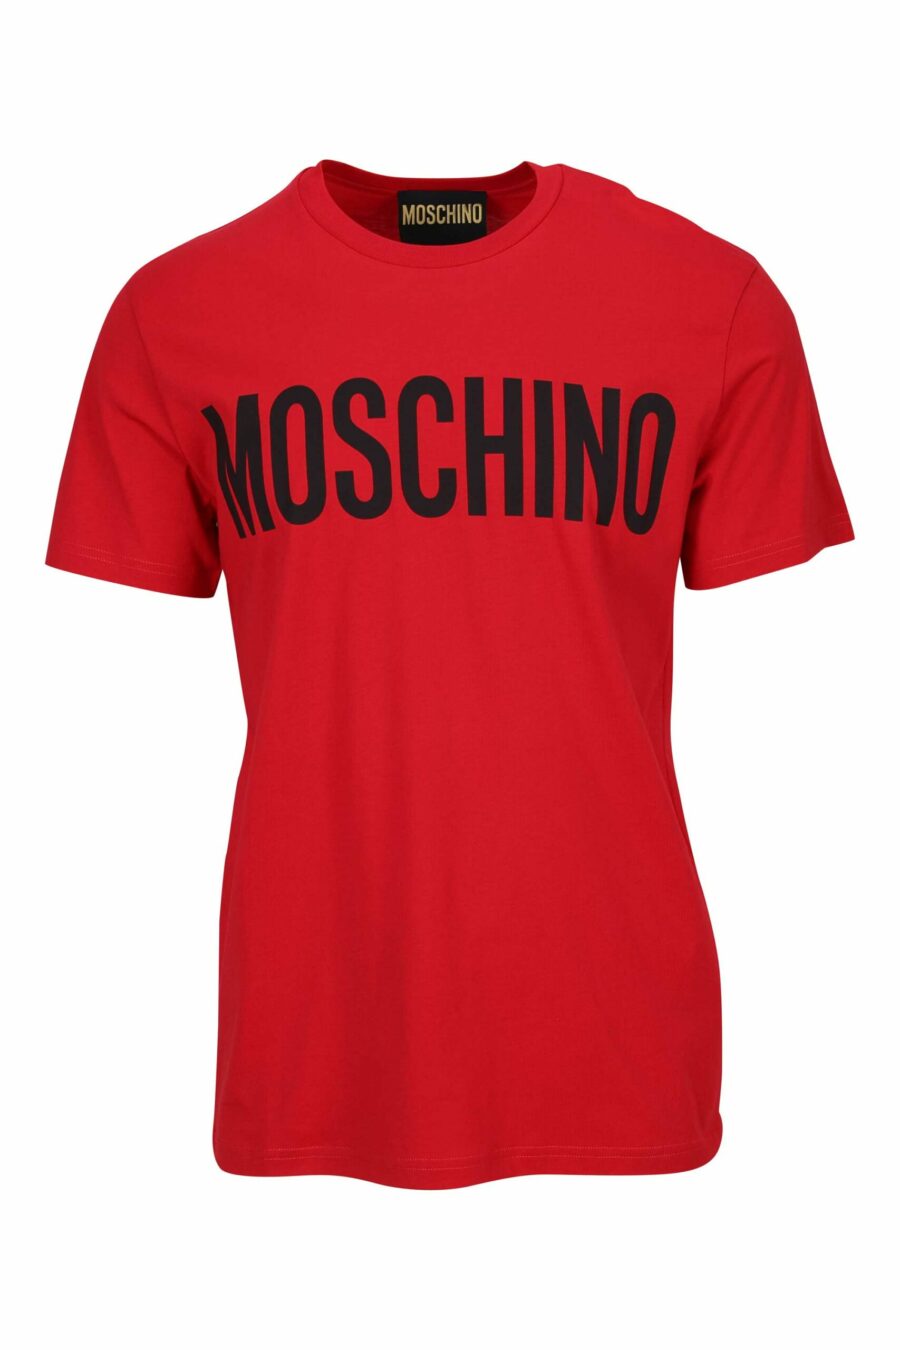 Übergroßes rotes Bio-Baumwoll-T-Shirt mit klassischem schwarzem Maxilog - 667113751856 skaliert